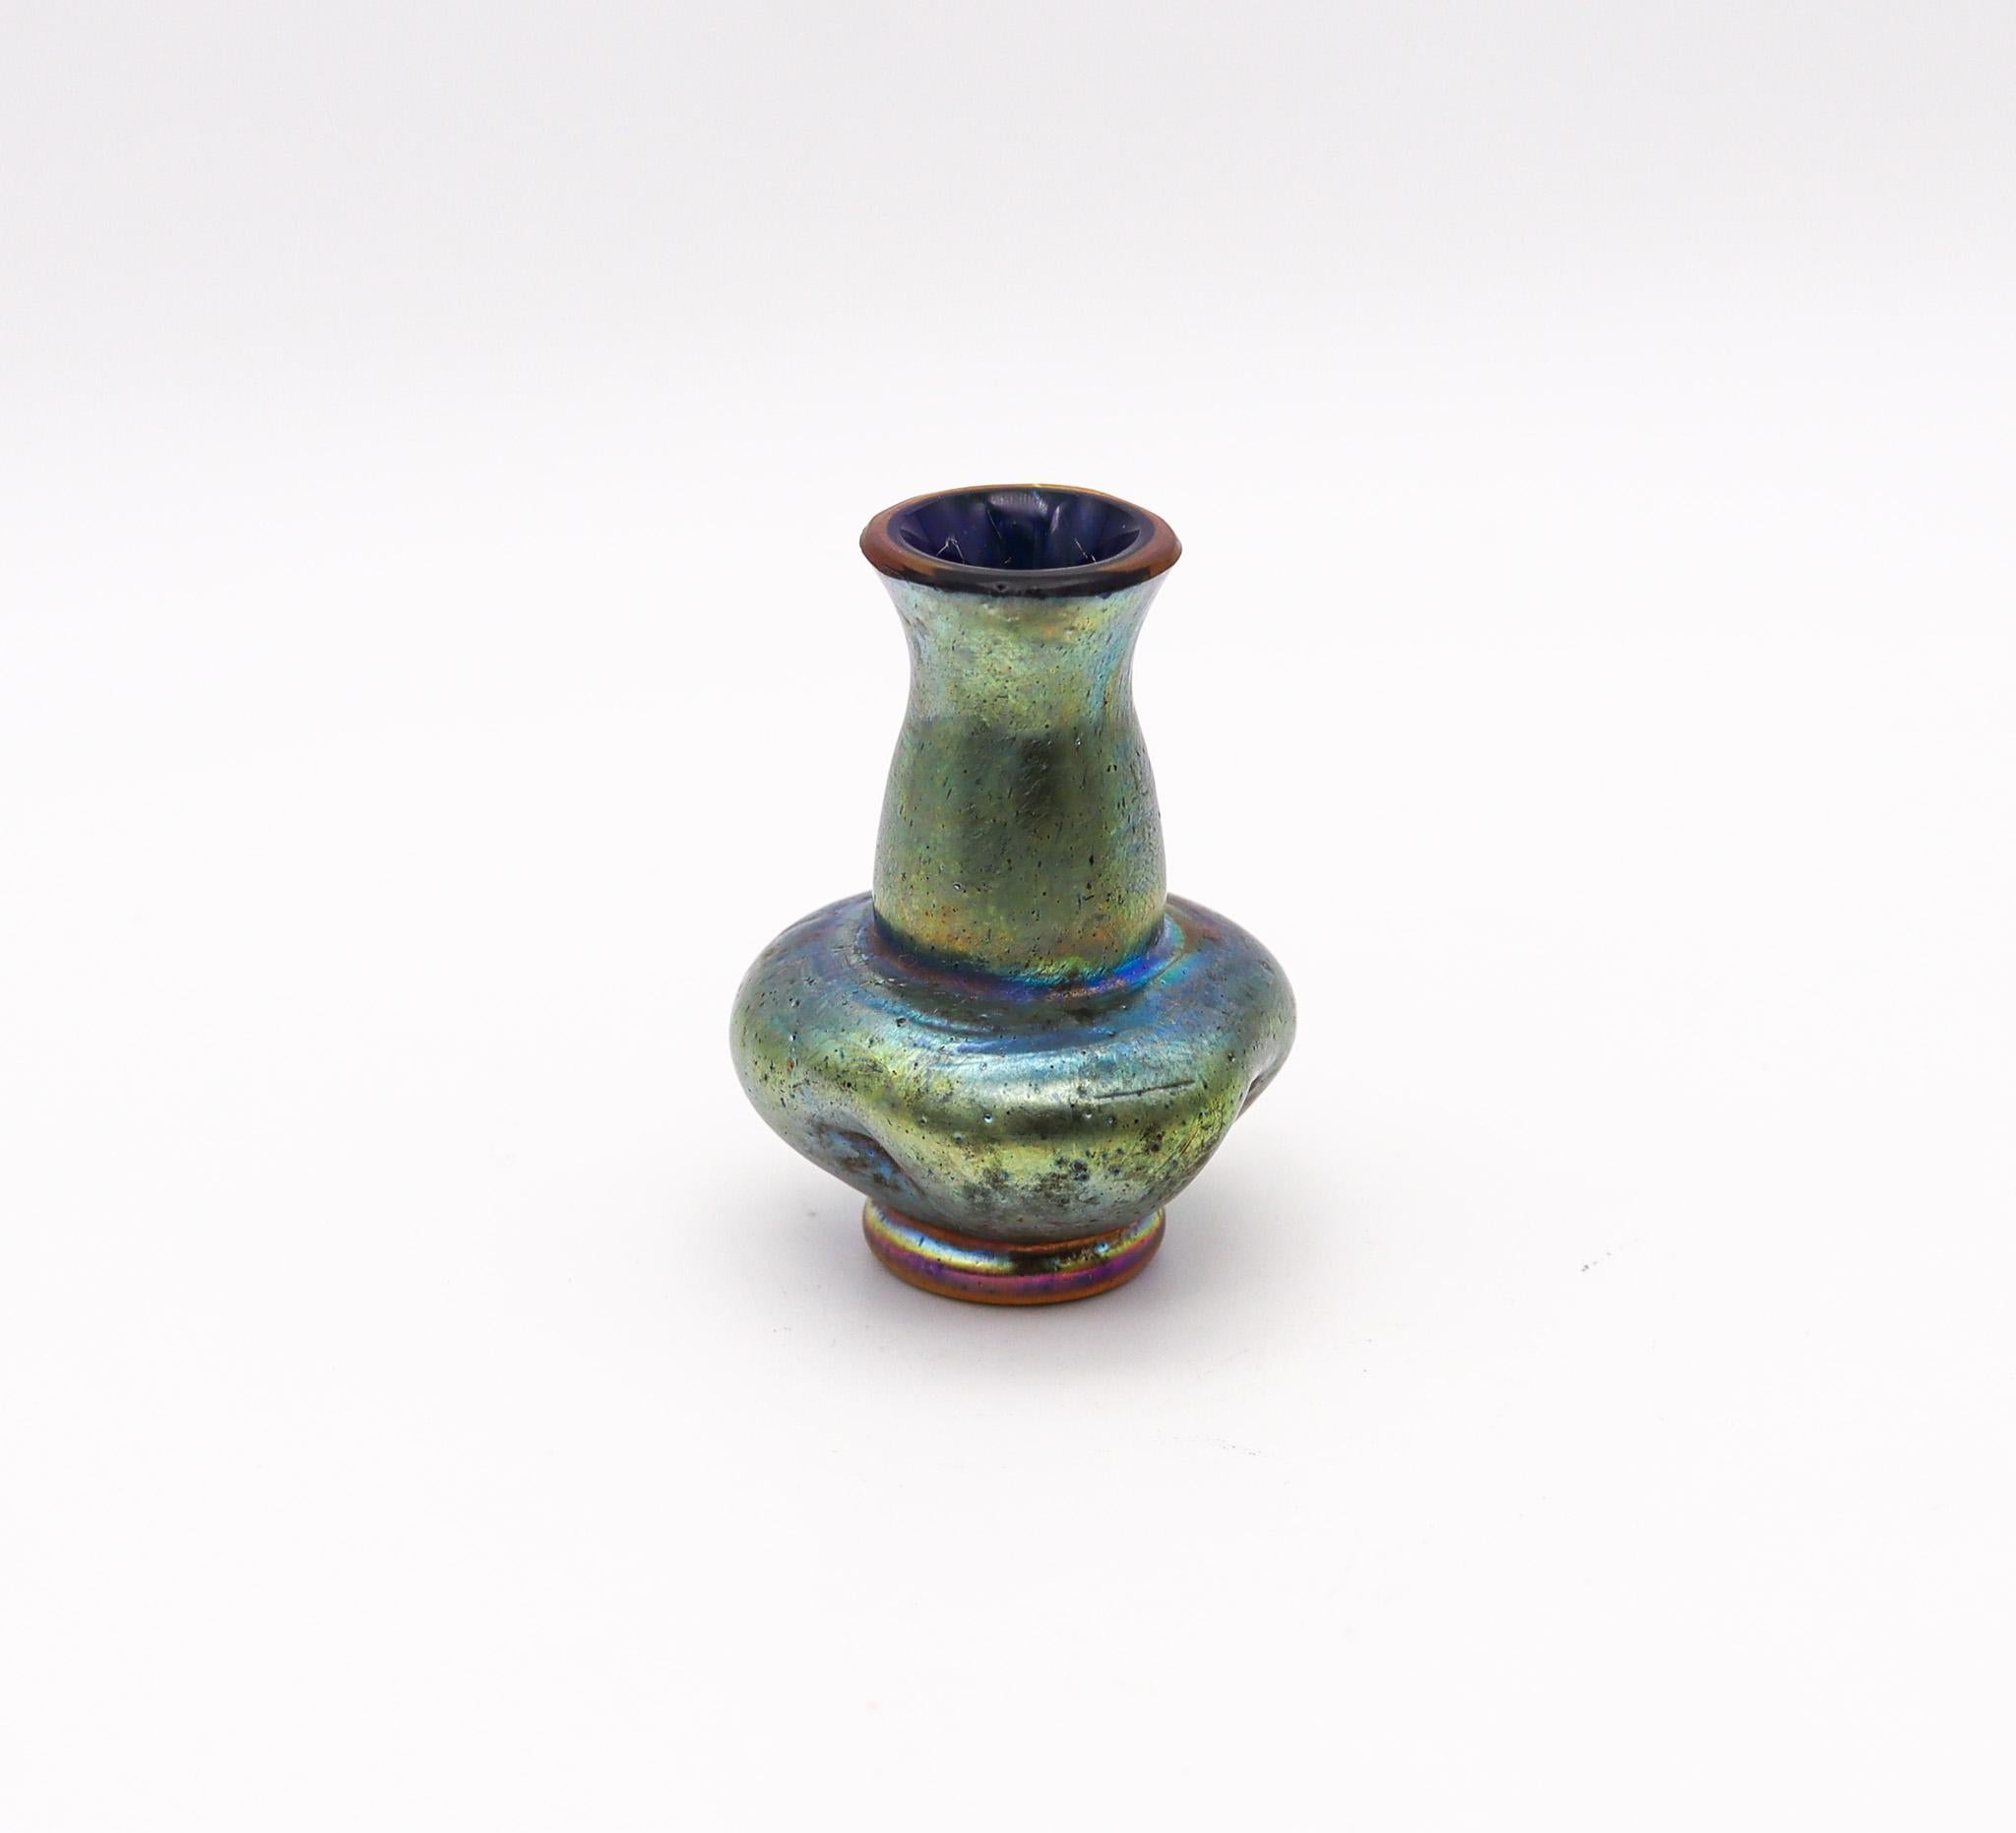 Vase miniature en verre conçu par Loetz.

Magnifique et très beau vase miniature ancien en verre de cabinet, créé par Loetz. Fabriqué à Bohemia, en Autriche, à l'époque de l'art nouveau, au tournant du XXe siècle, vers 1900. Fabriqué avec une forme